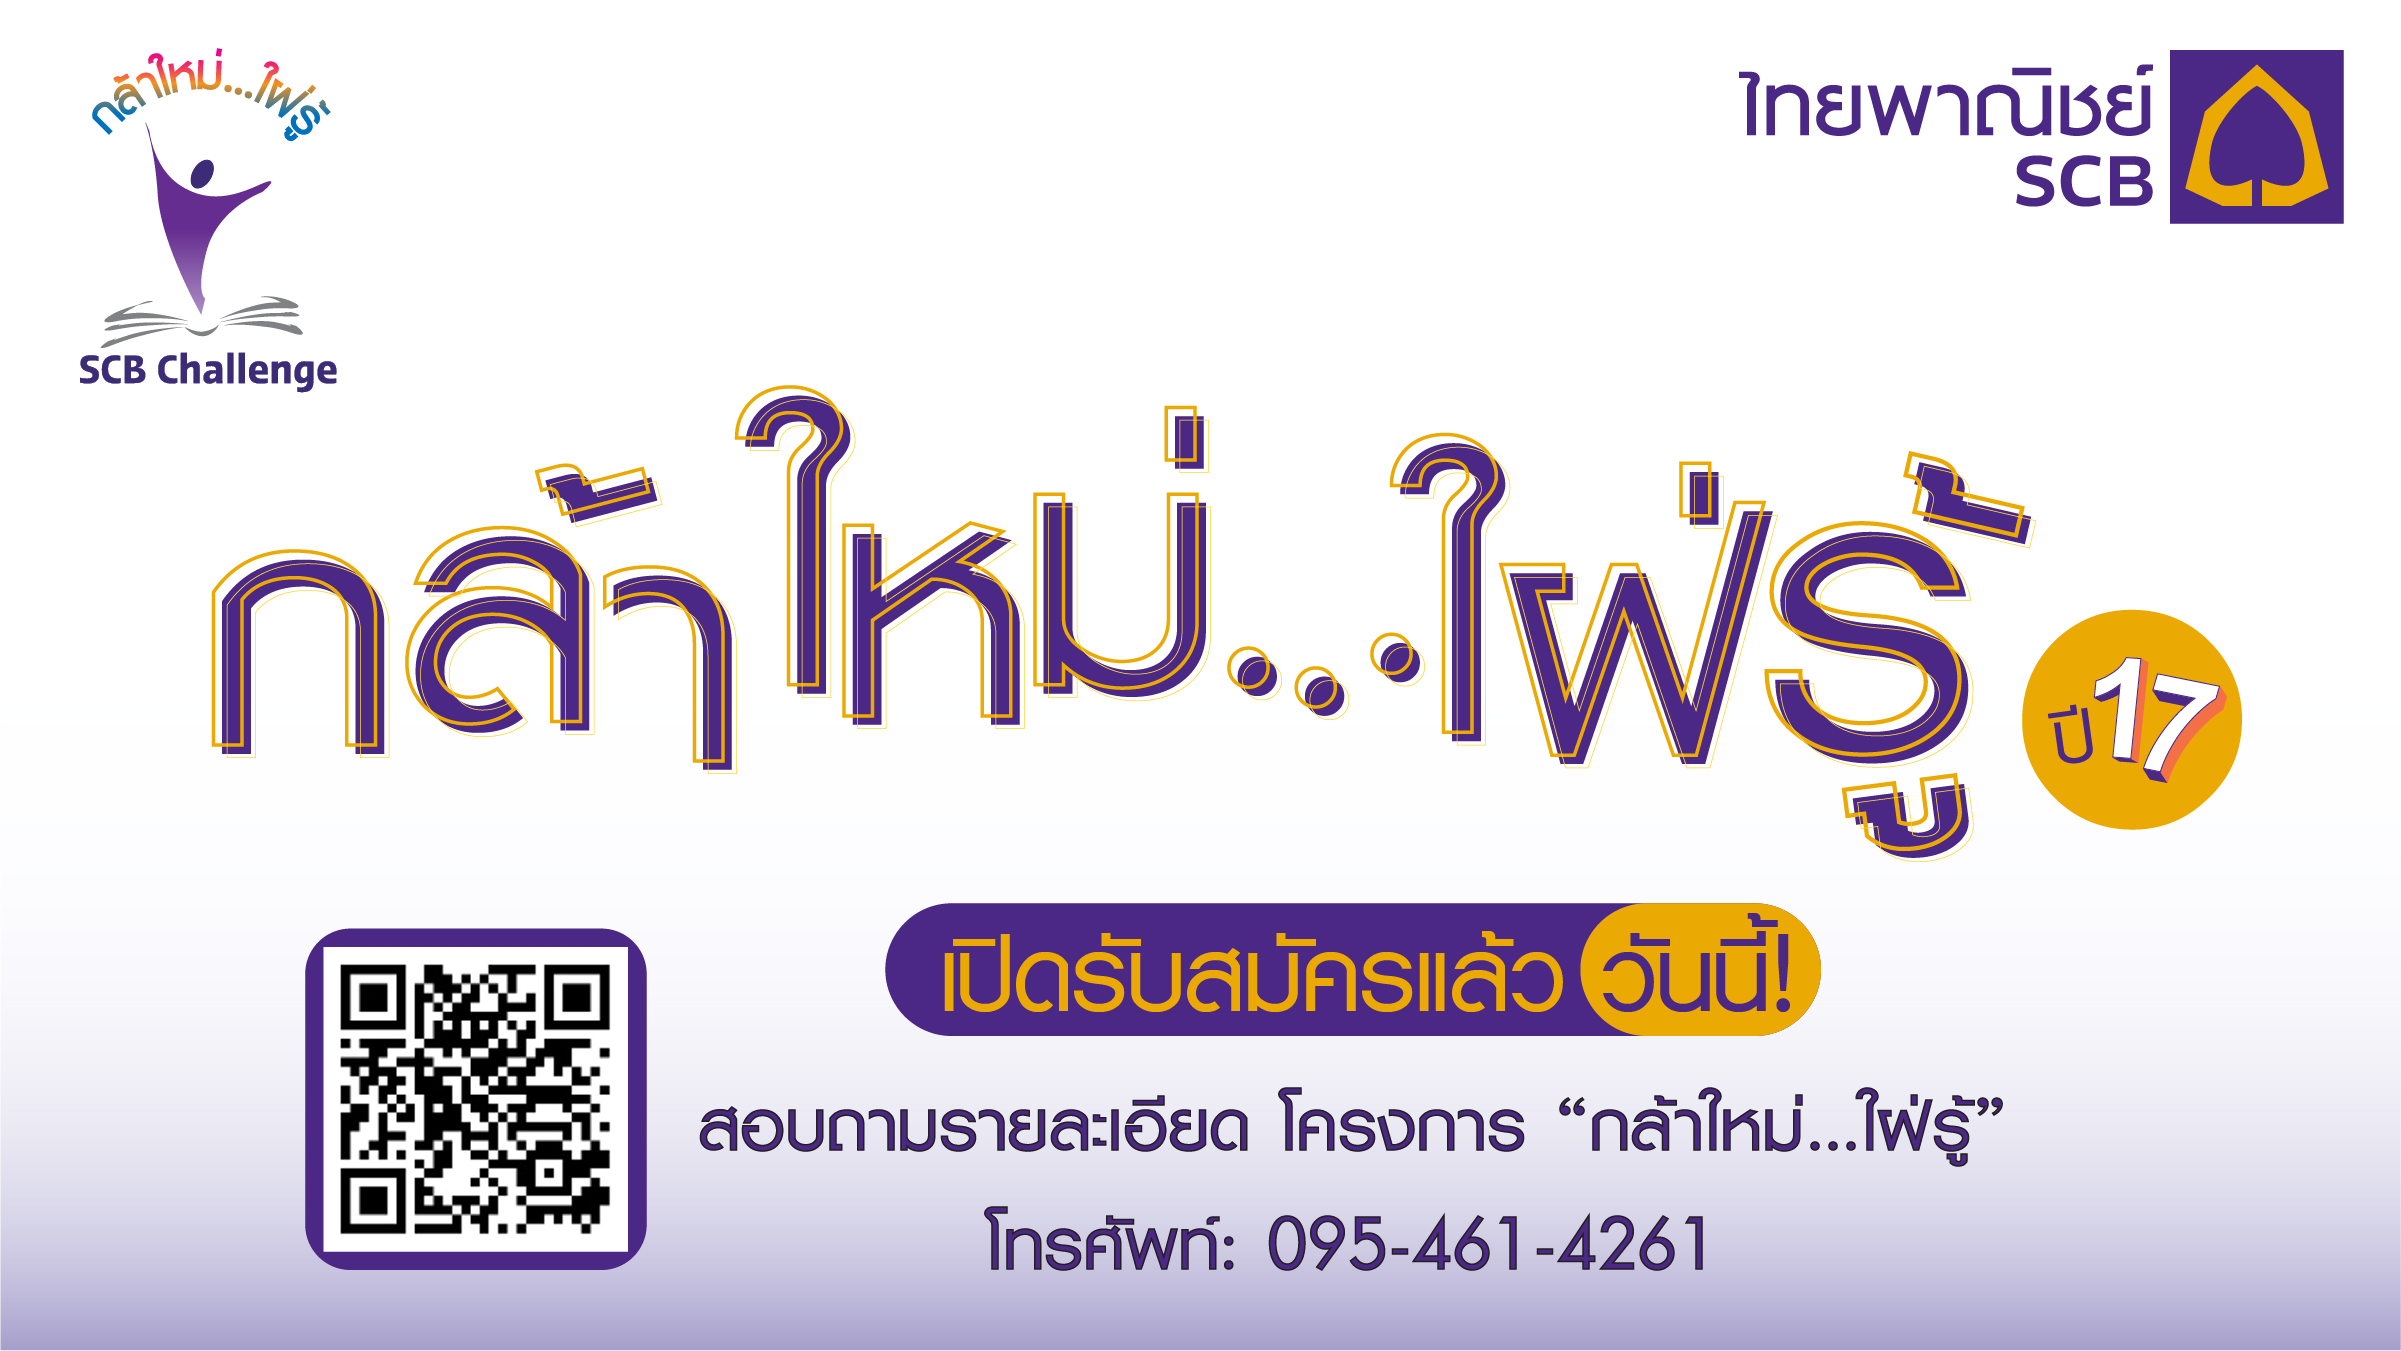 ธนาคารไทยพาณิชย์จัดกิจกรรมพัฒนาทักษะความสามารถเยาวชนในโครงการ “กล้าใหม่…ใฝ่รู้” ปีที่ 17